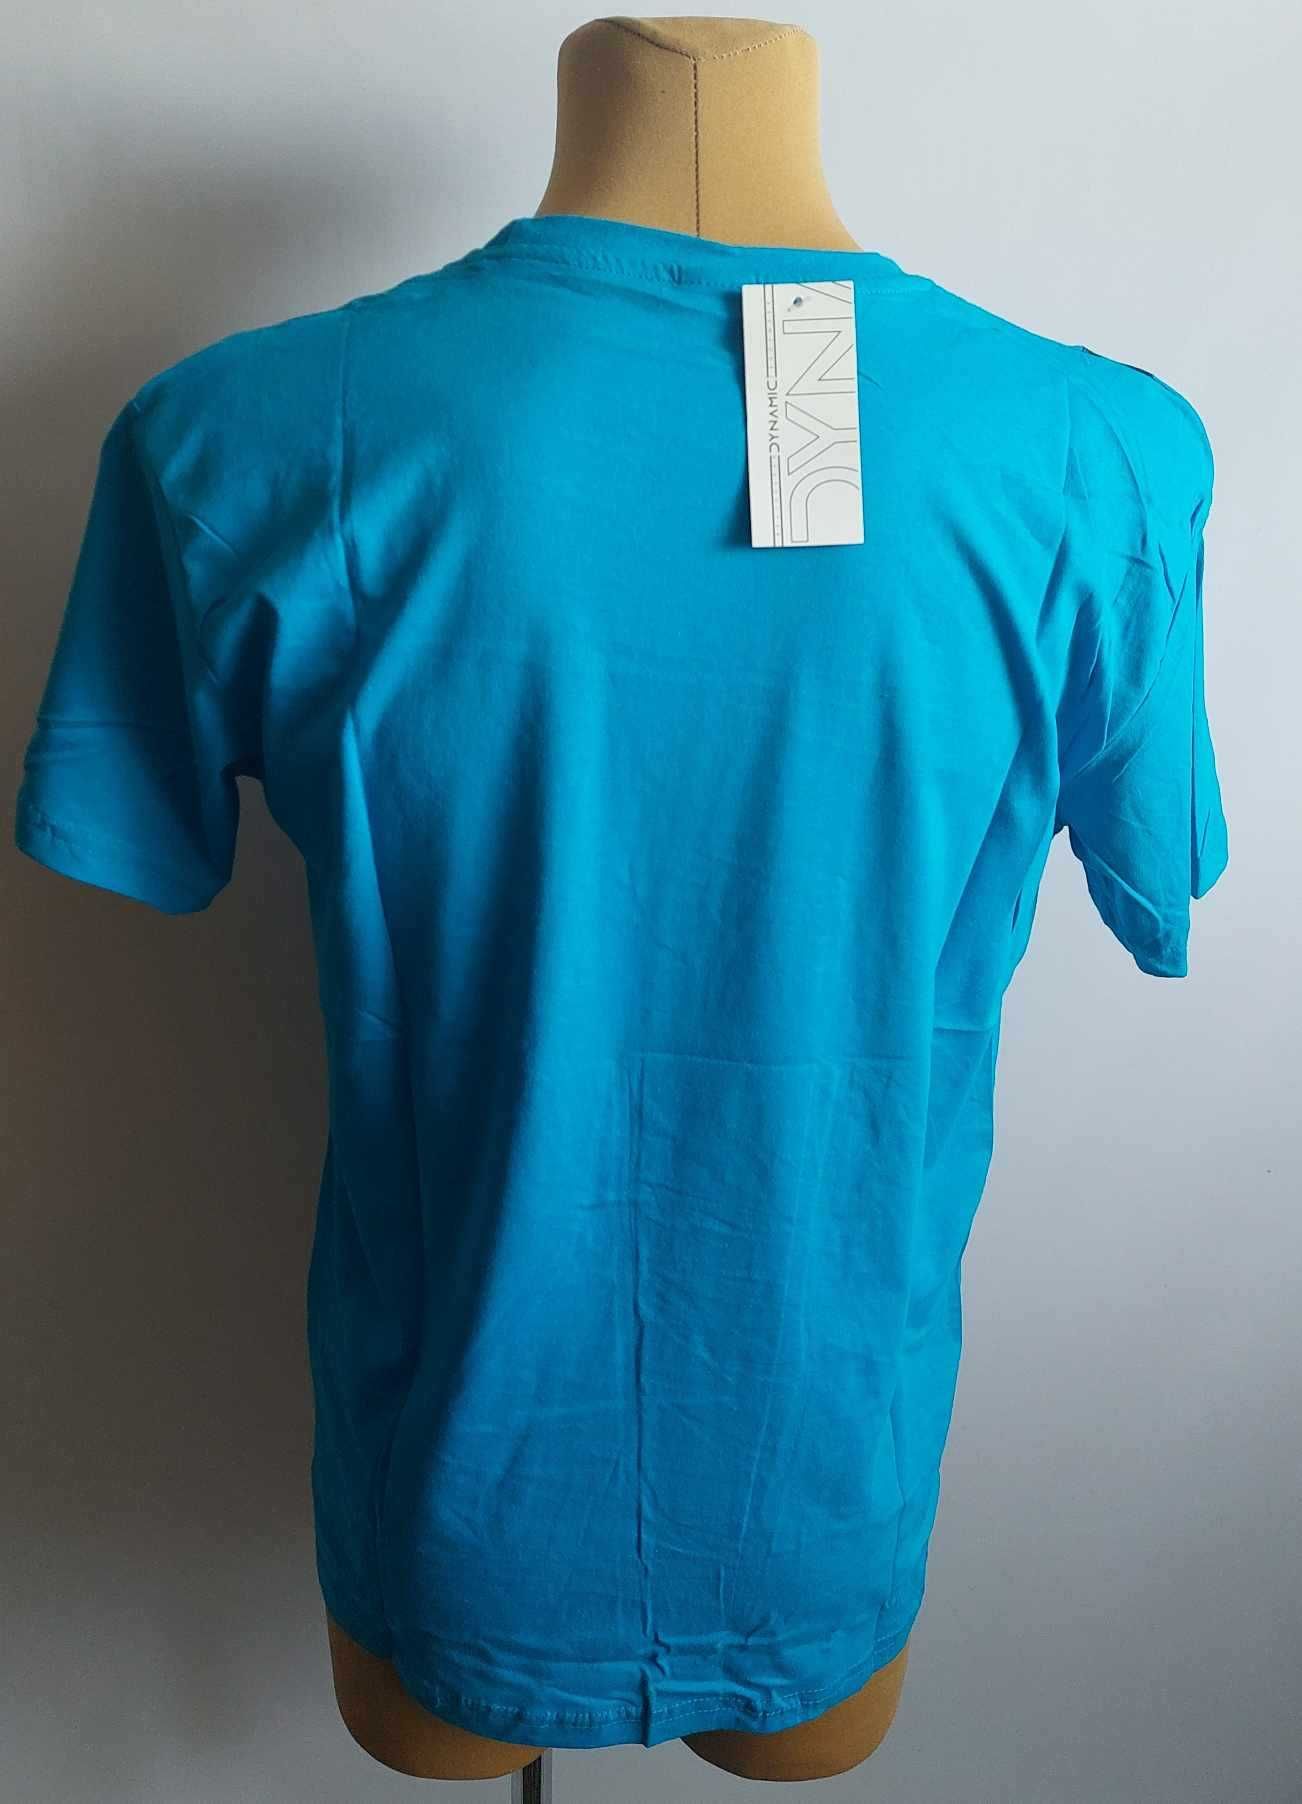 Koszulka męska bawełna t-shirt męski turecki DYNAMIC r. M obwód 104 cm